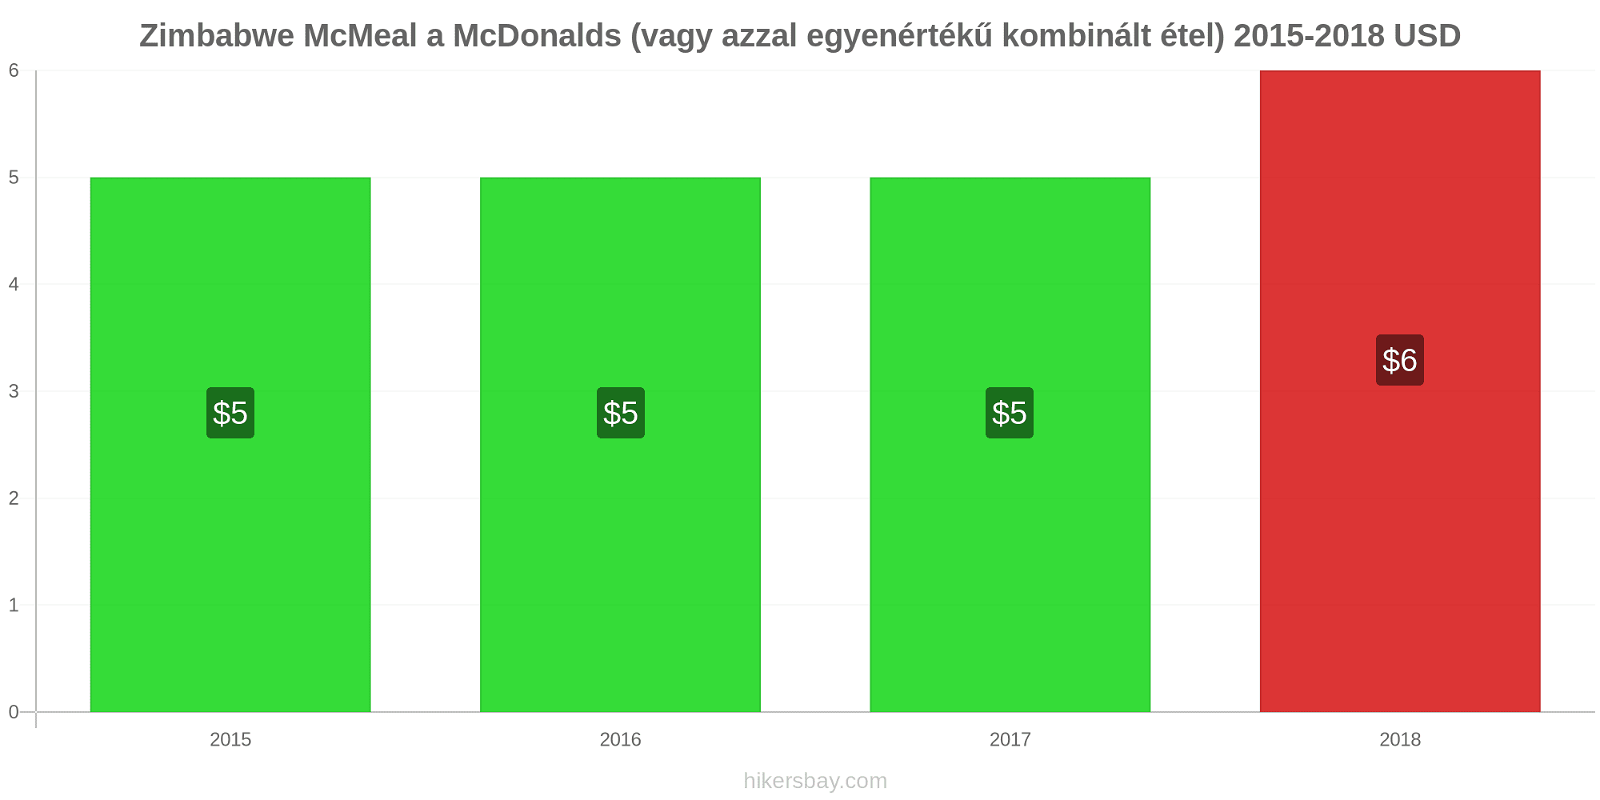 Zimbabwe árváltozások McMeal a McDonalds (vagy azzal egyenértékű kombinált étel) hikersbay.com